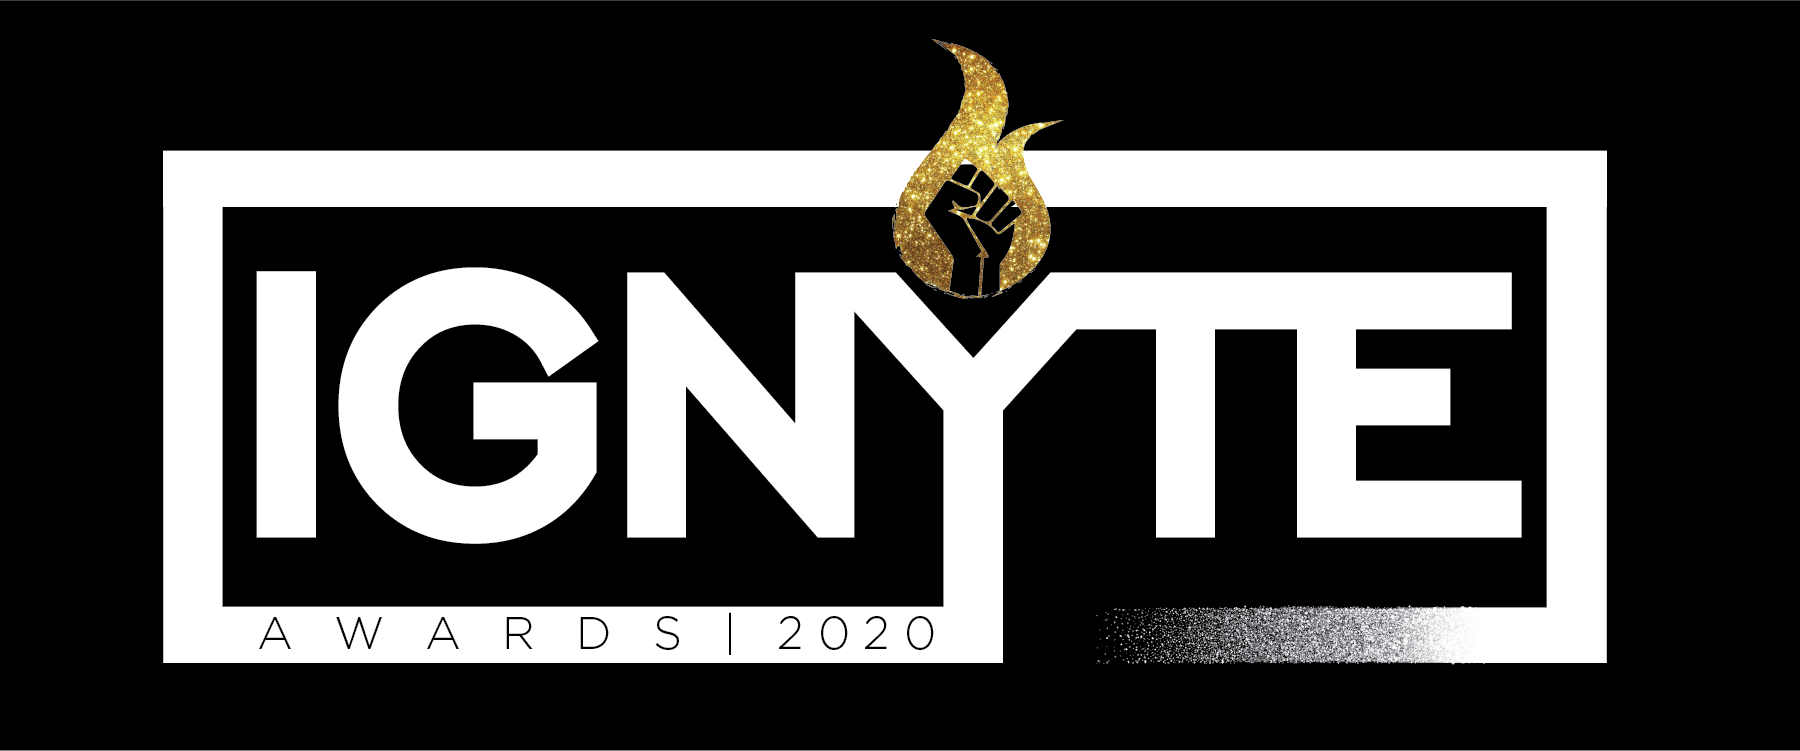 ignyte awards logo